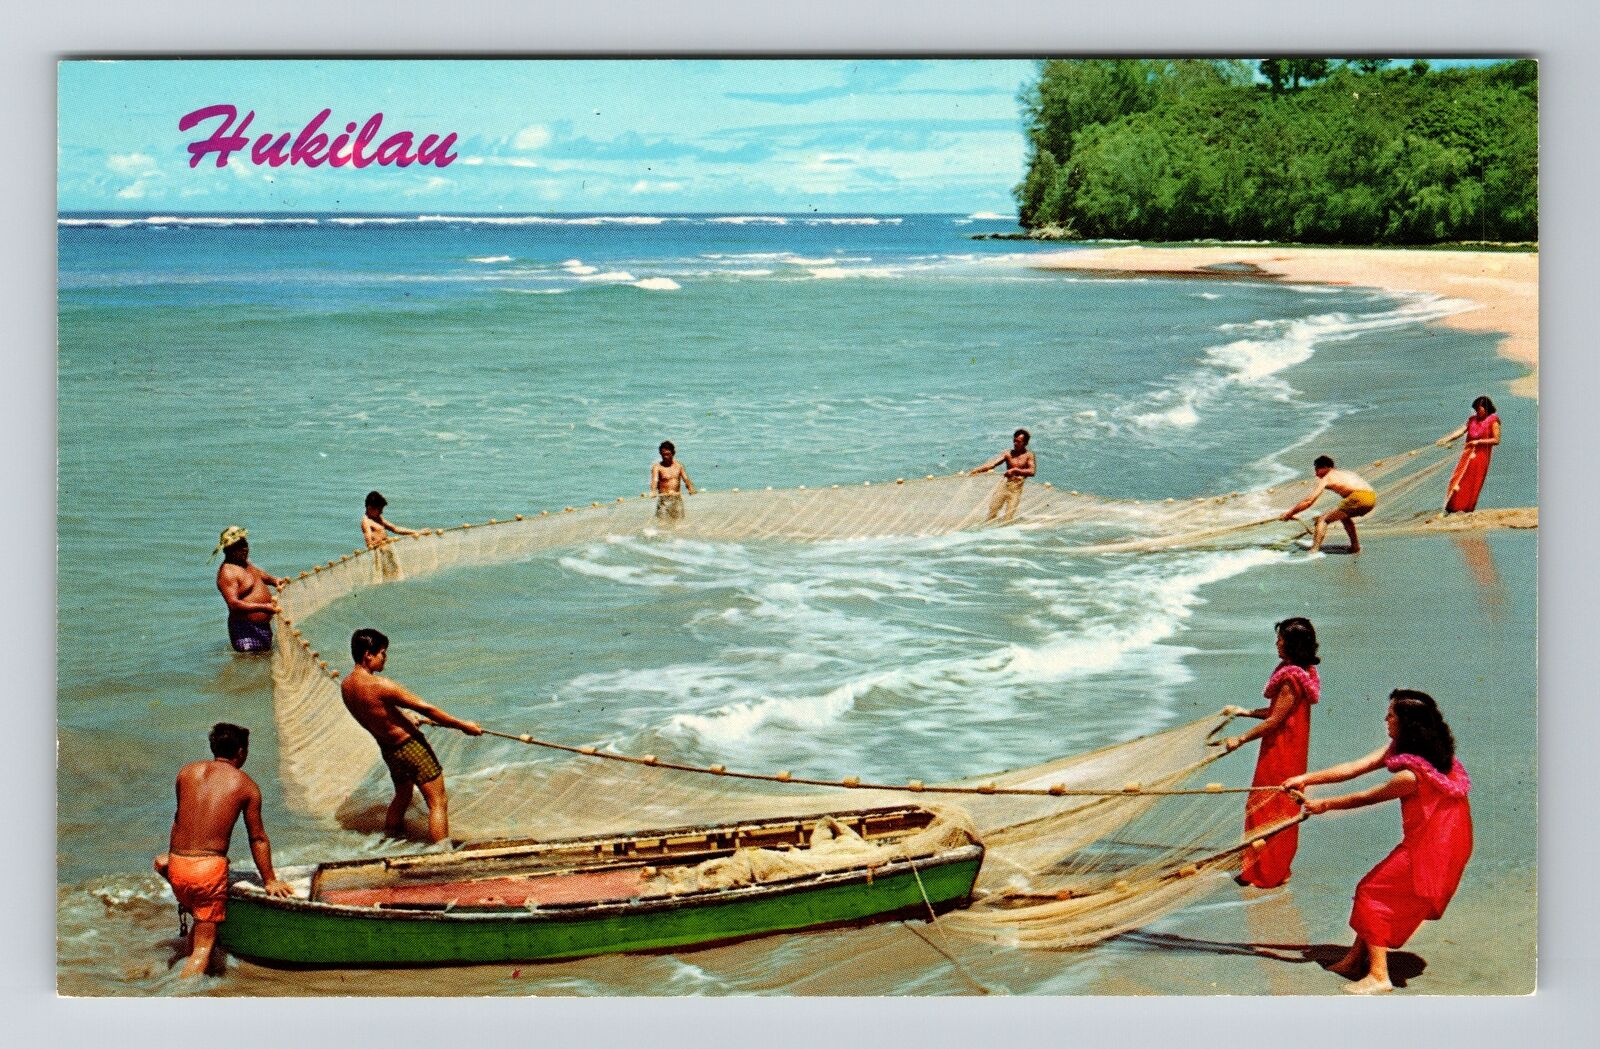 HI-Hawaii, Hukilau In Hawaii, Old Fashion Fishing, Vintage Postcard